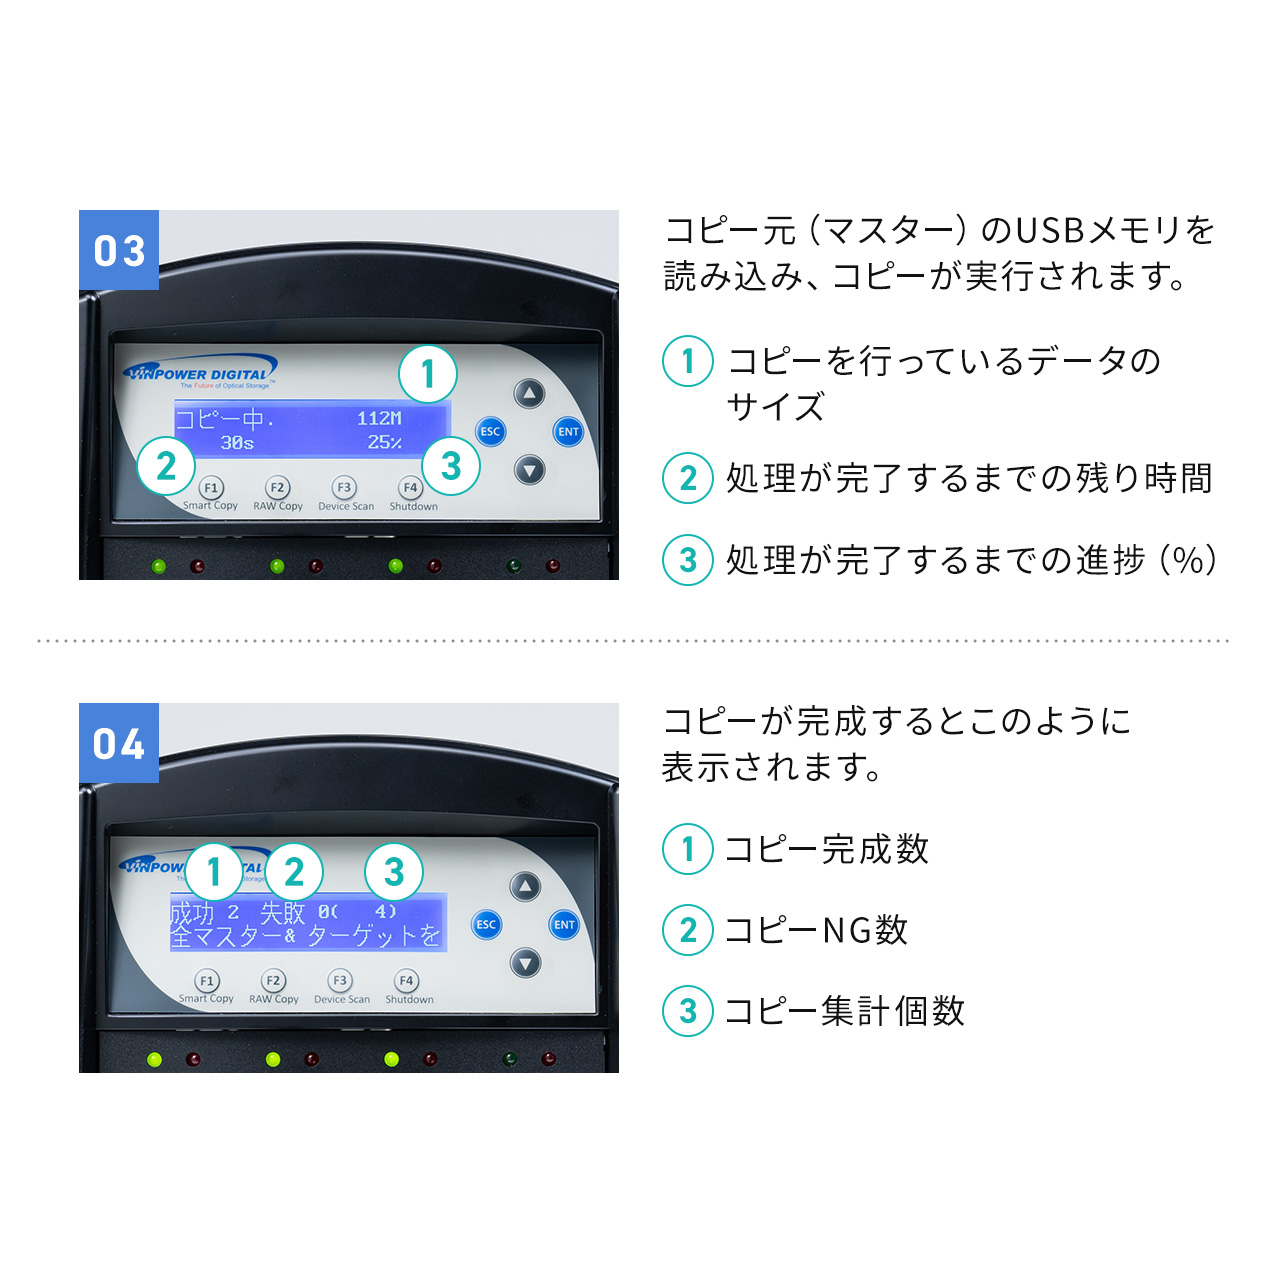 デュプリケーター USBメモリ 大量コピー 7本同時 クローン 複製 消去 削除 パソコン不要 日本語 法人 貸出機サービス 読込33MB/S 書込31MB/S 400-USBDU